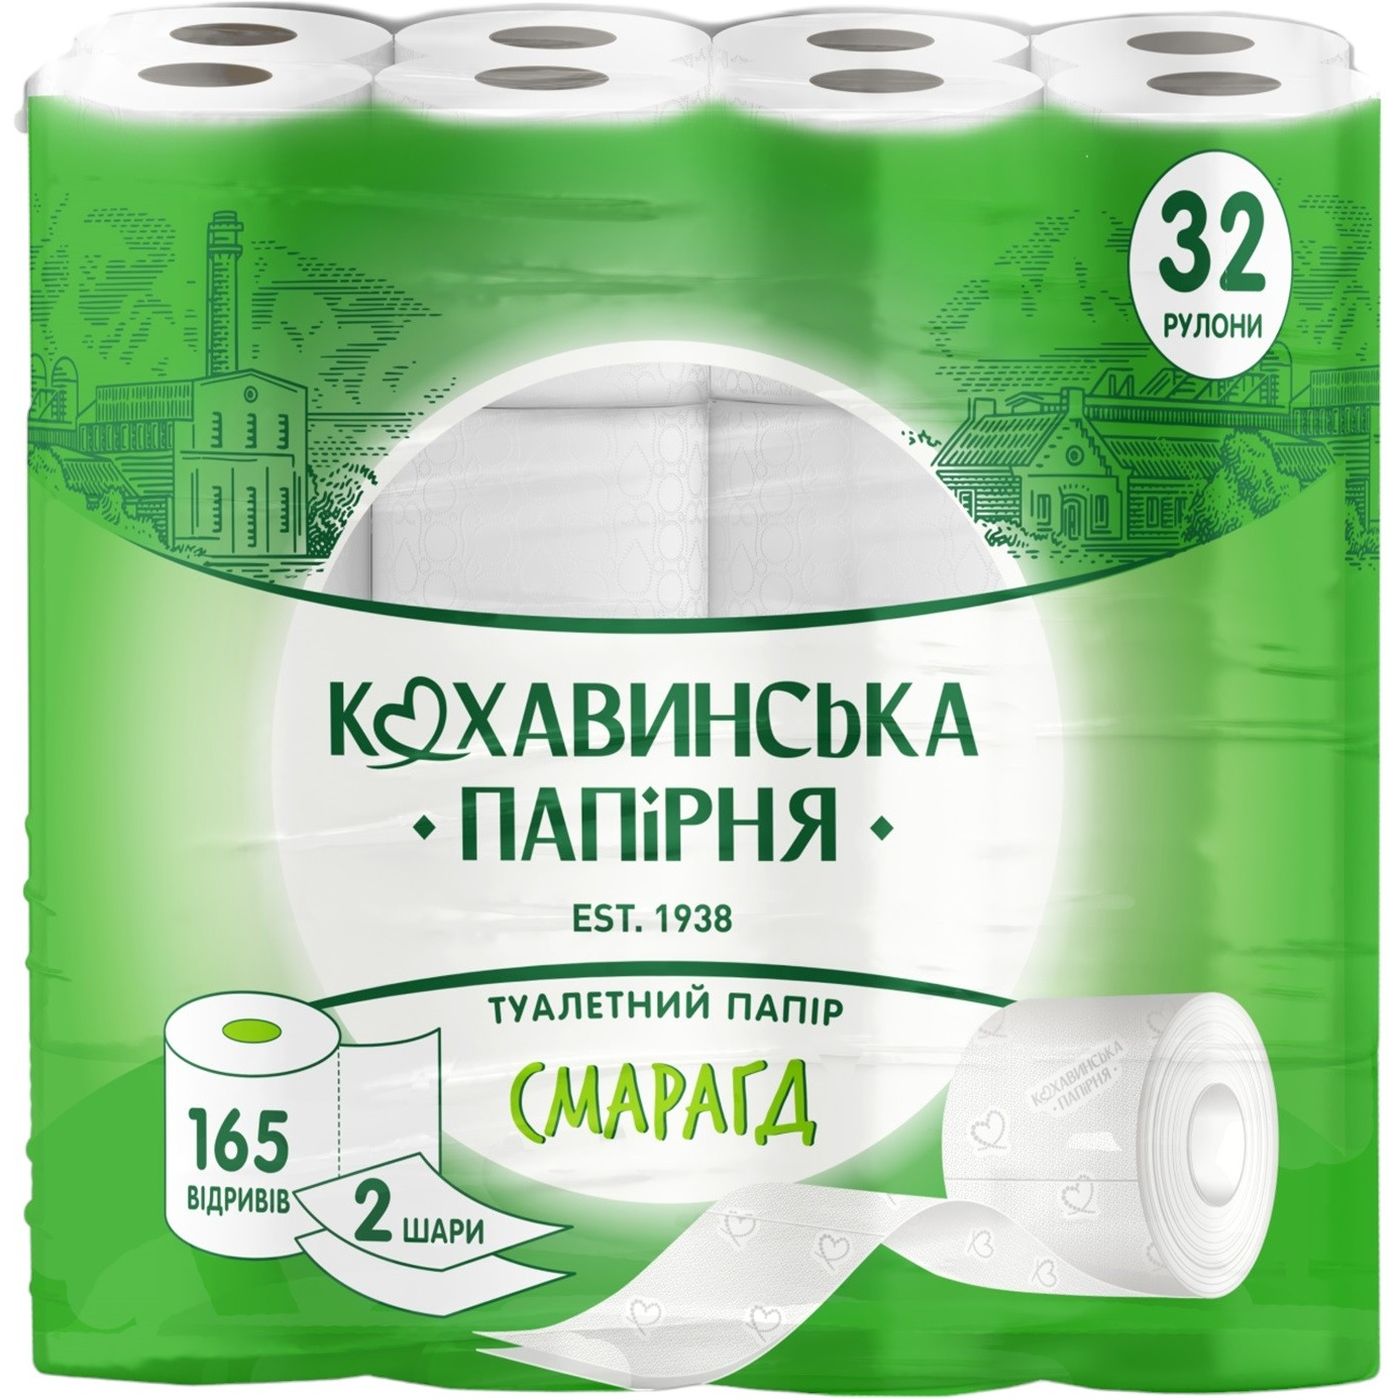 Туалетний папір Кохавинська папірня Смарагд 2 шари 165 відривів 32 шт. - фото 1